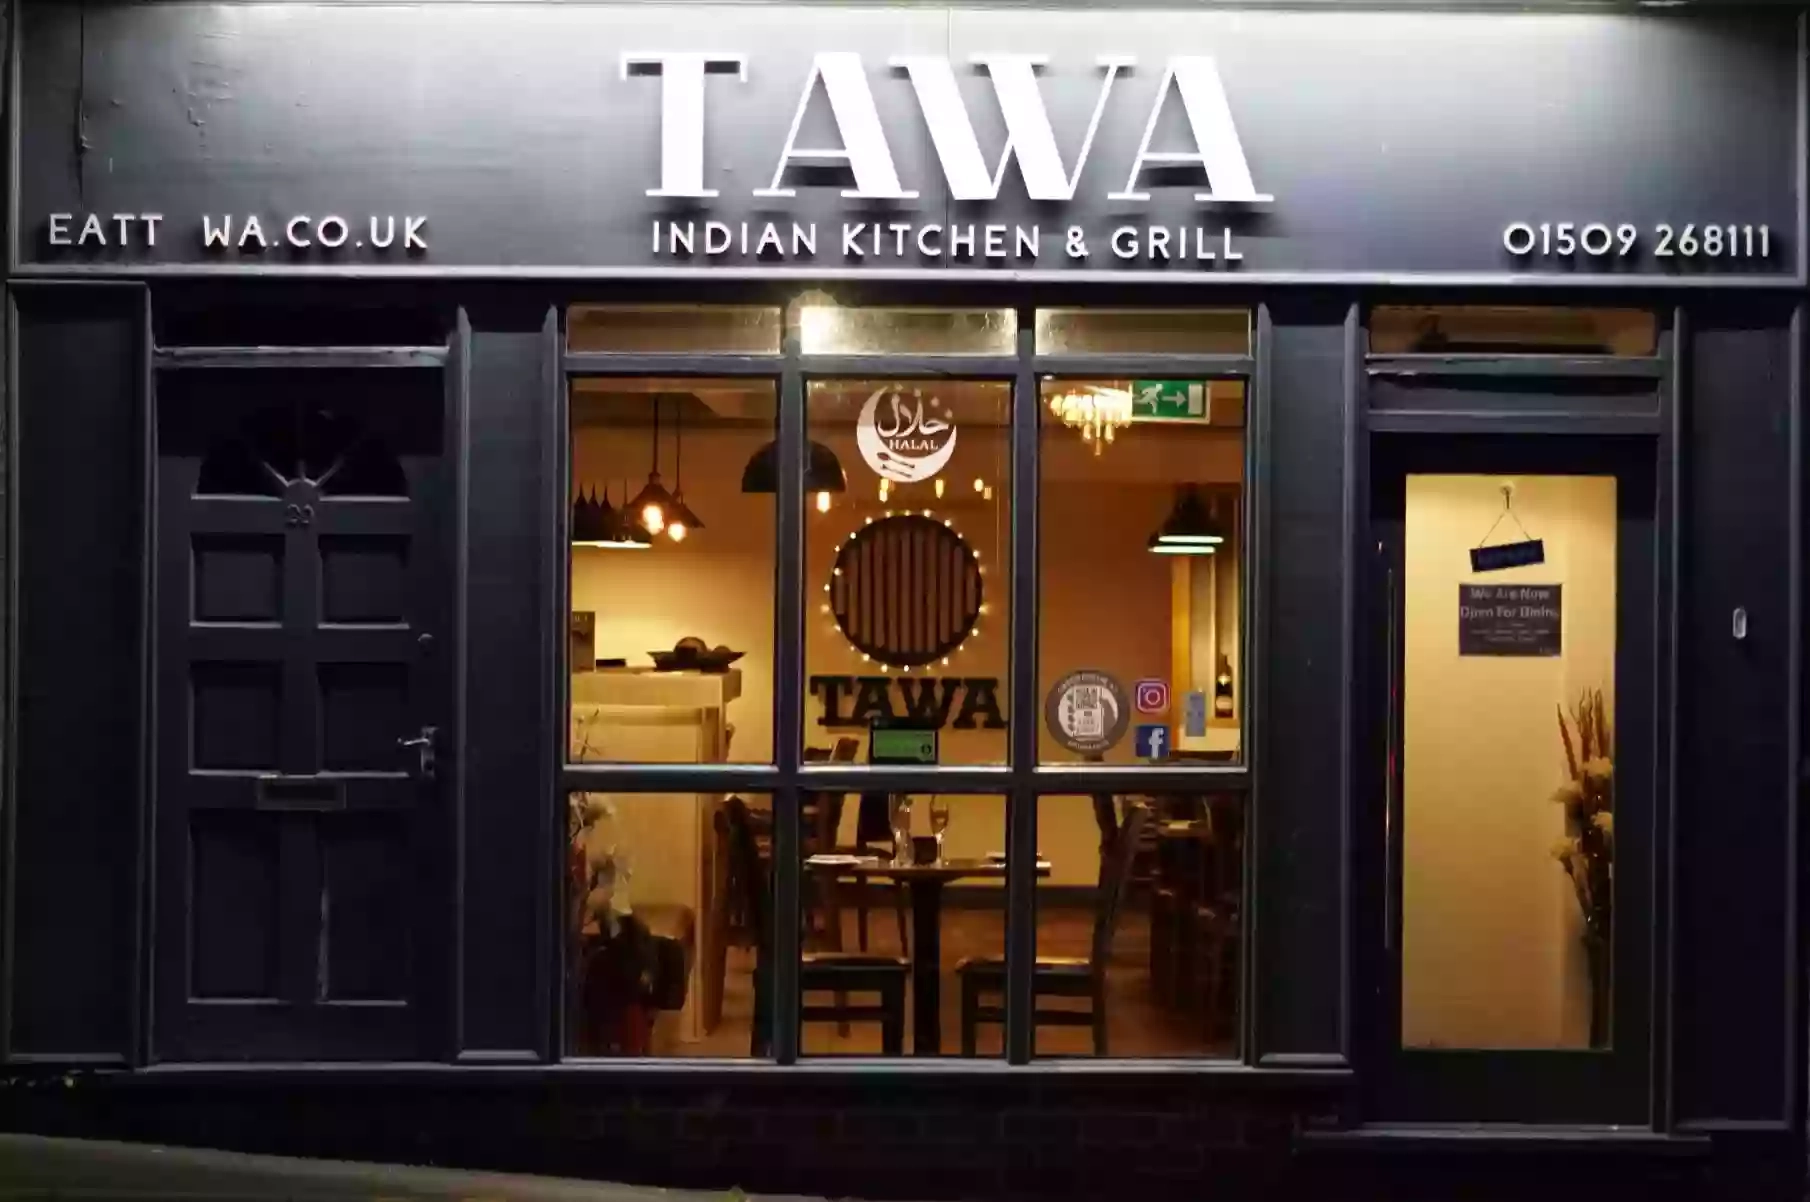 TAWA INDIAN KITCHEN & GRILL